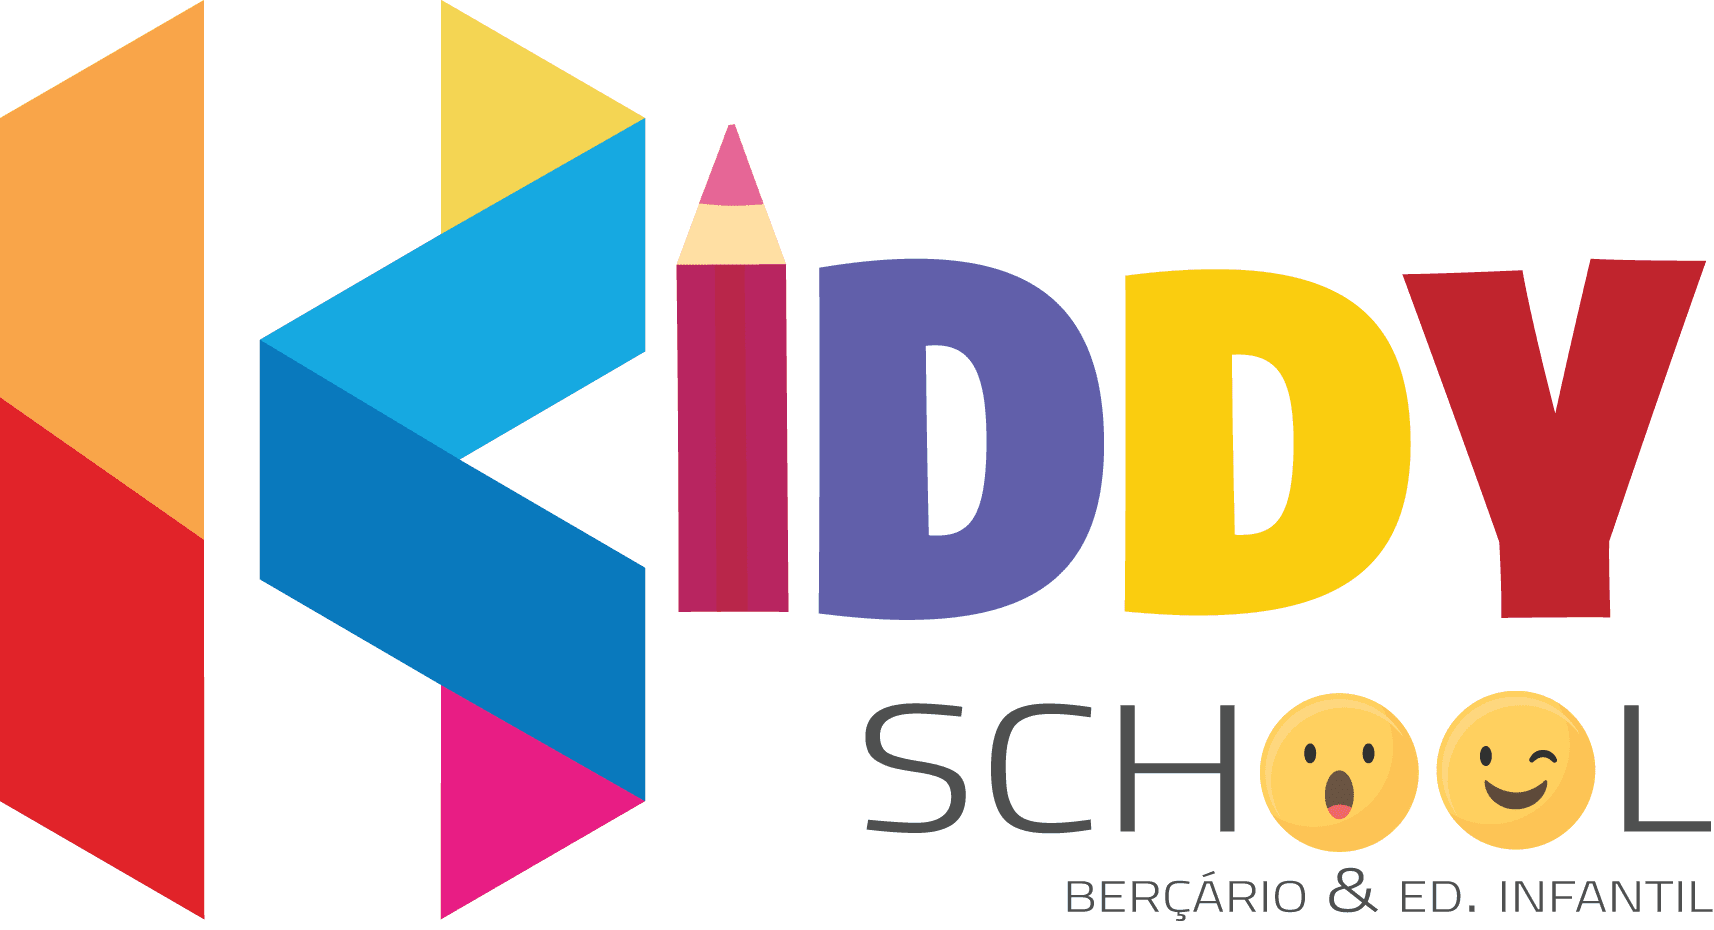 Kiddy School Berçário e Educação Infantil